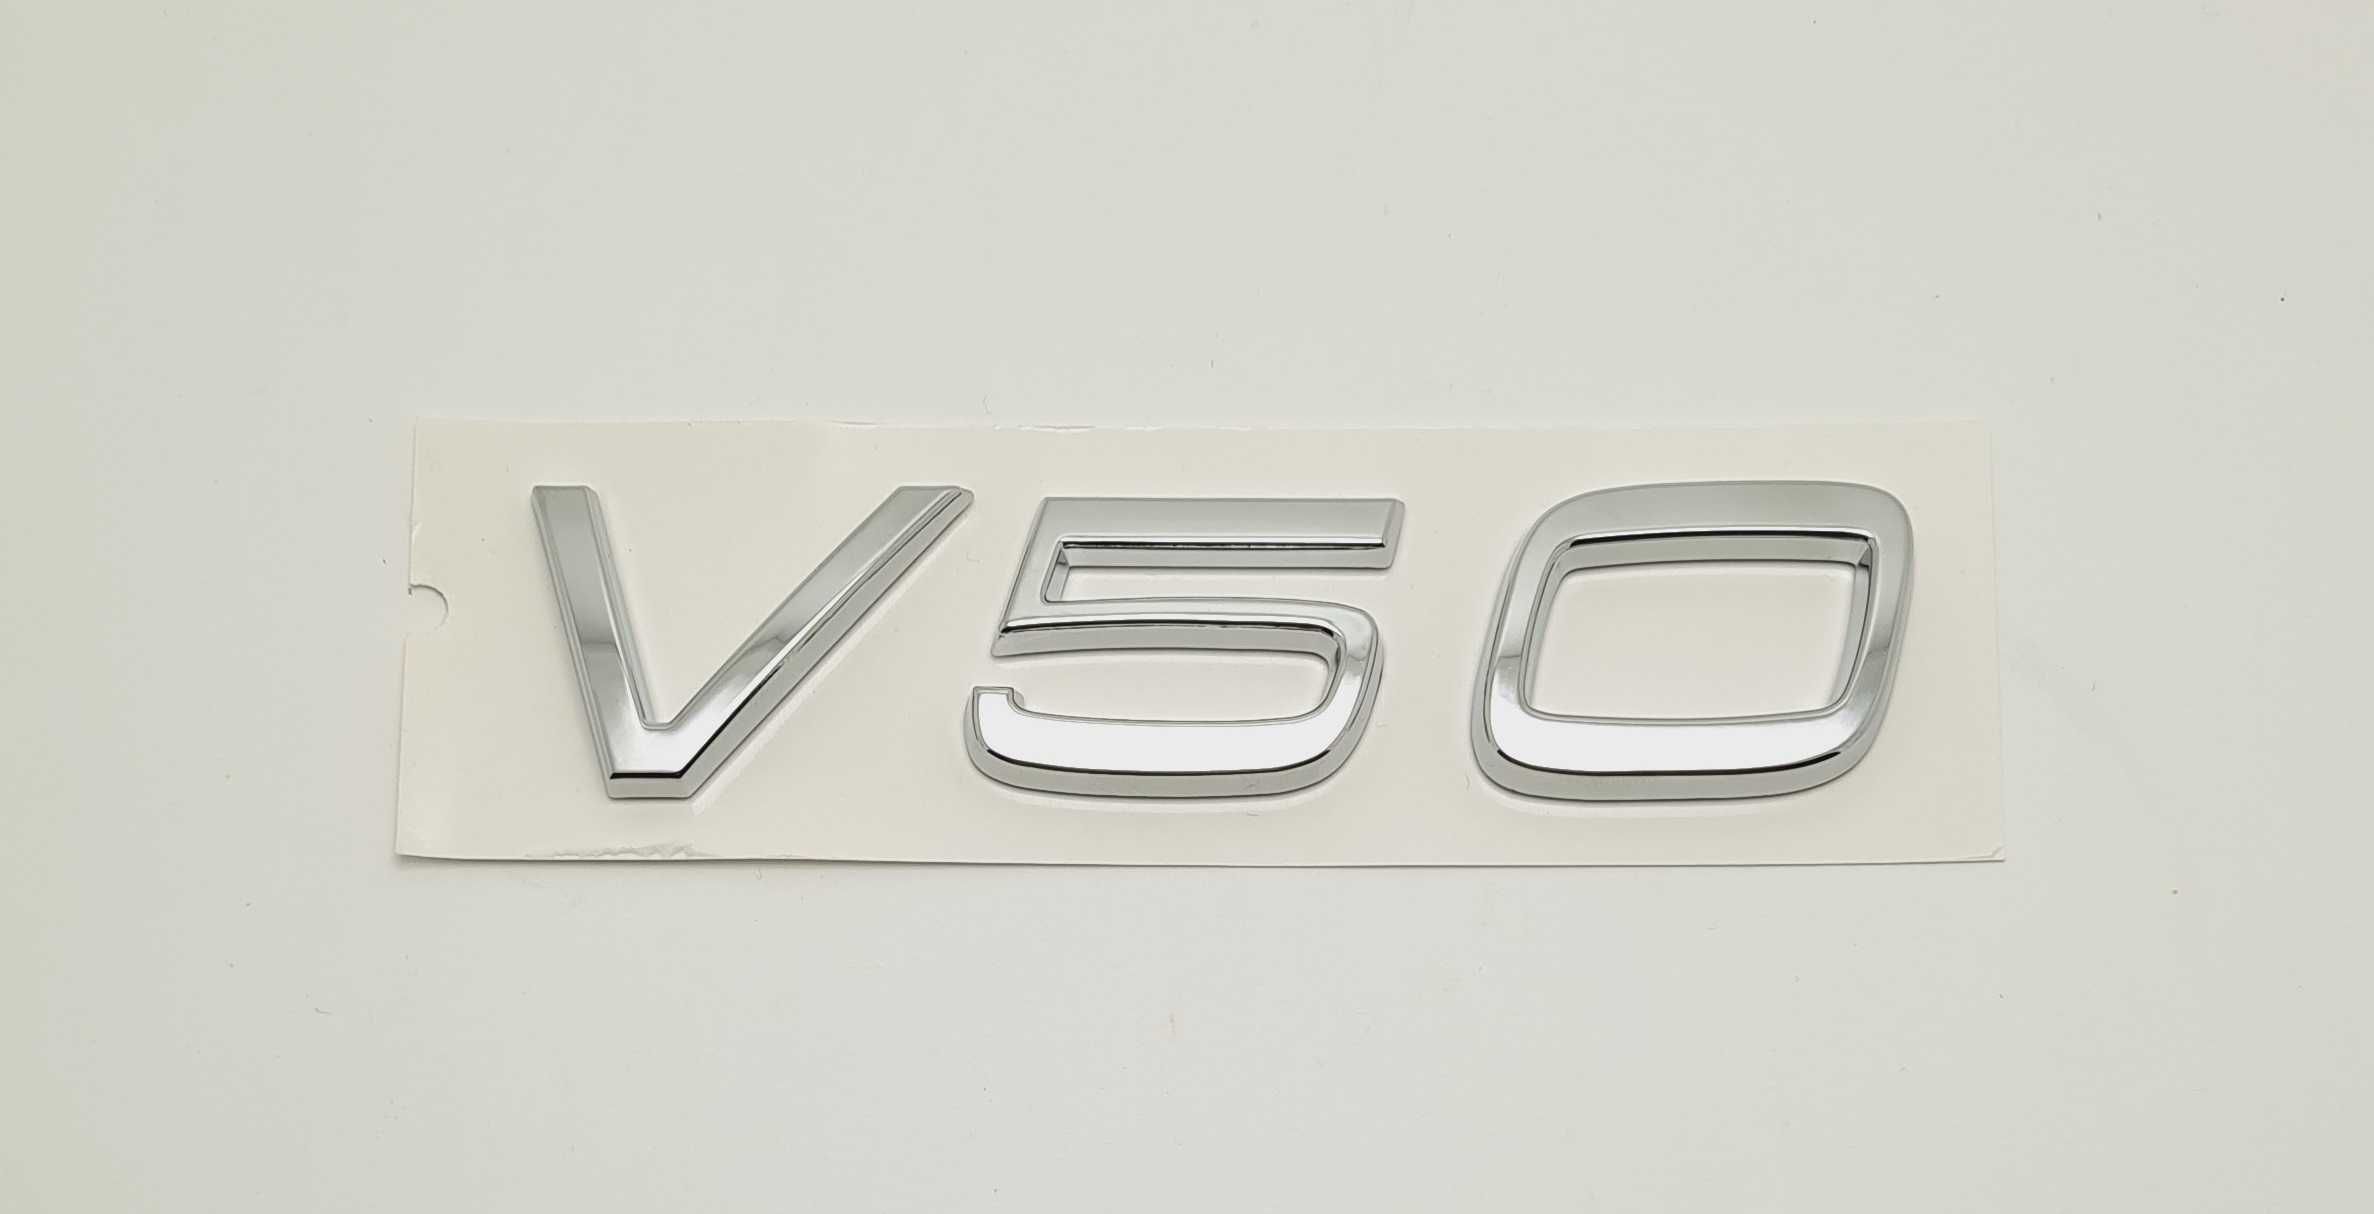 Эмблемы надписи шильдики Volvo XC60 XC90 S40 S60 V50 V40 C30 S90